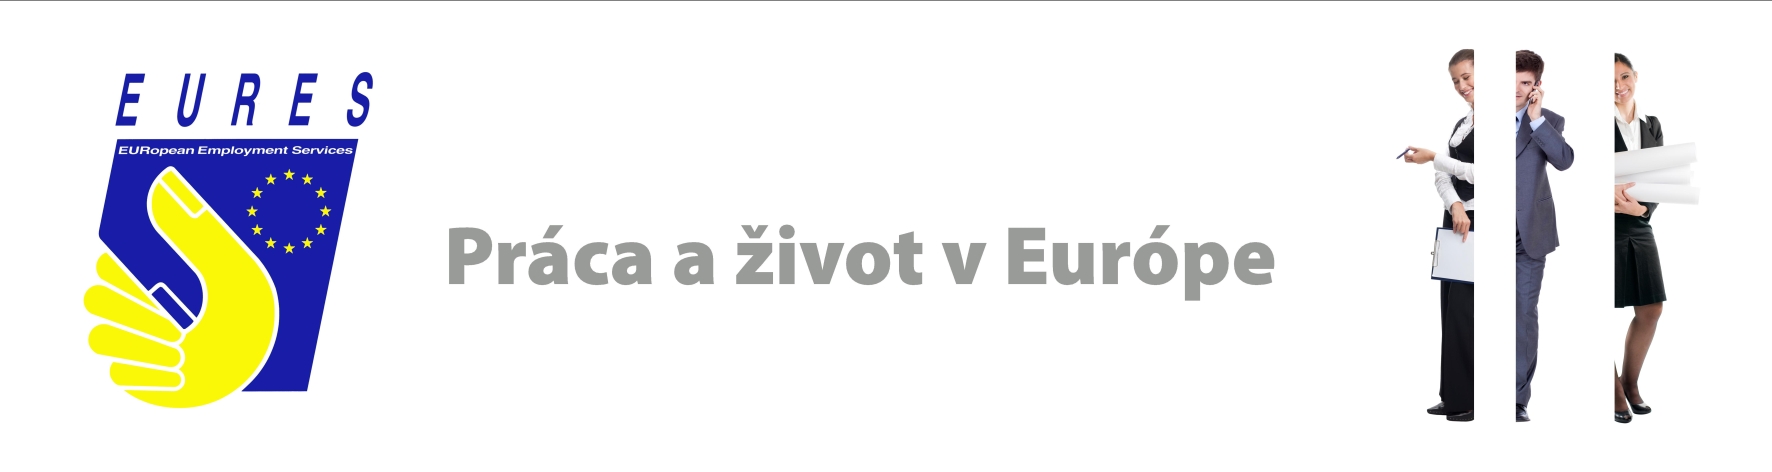 www.eures.sk